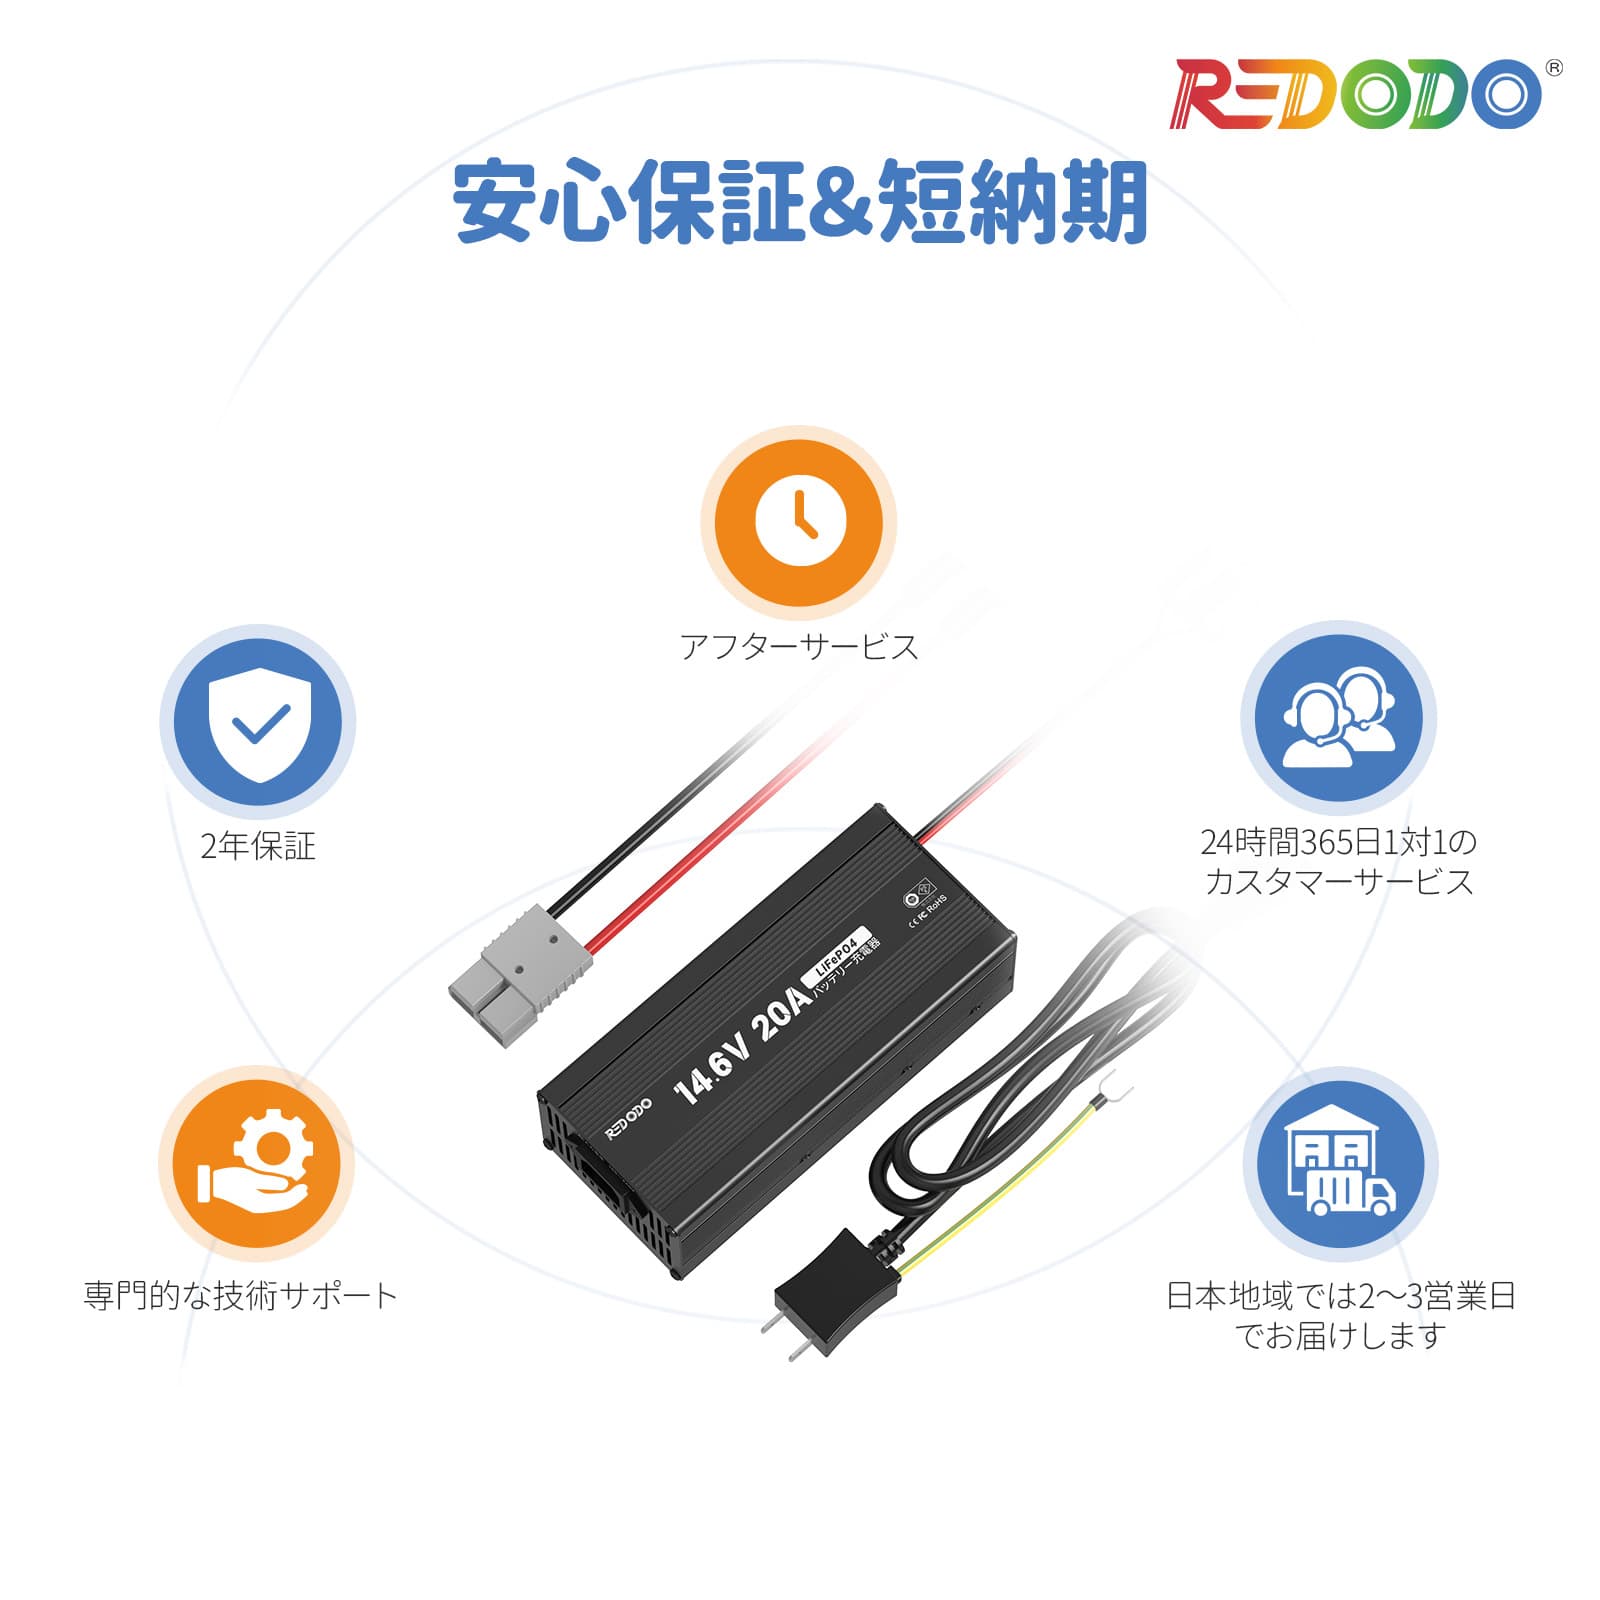 Redodo 14.6V 20A 充電器（PSE認証済み）